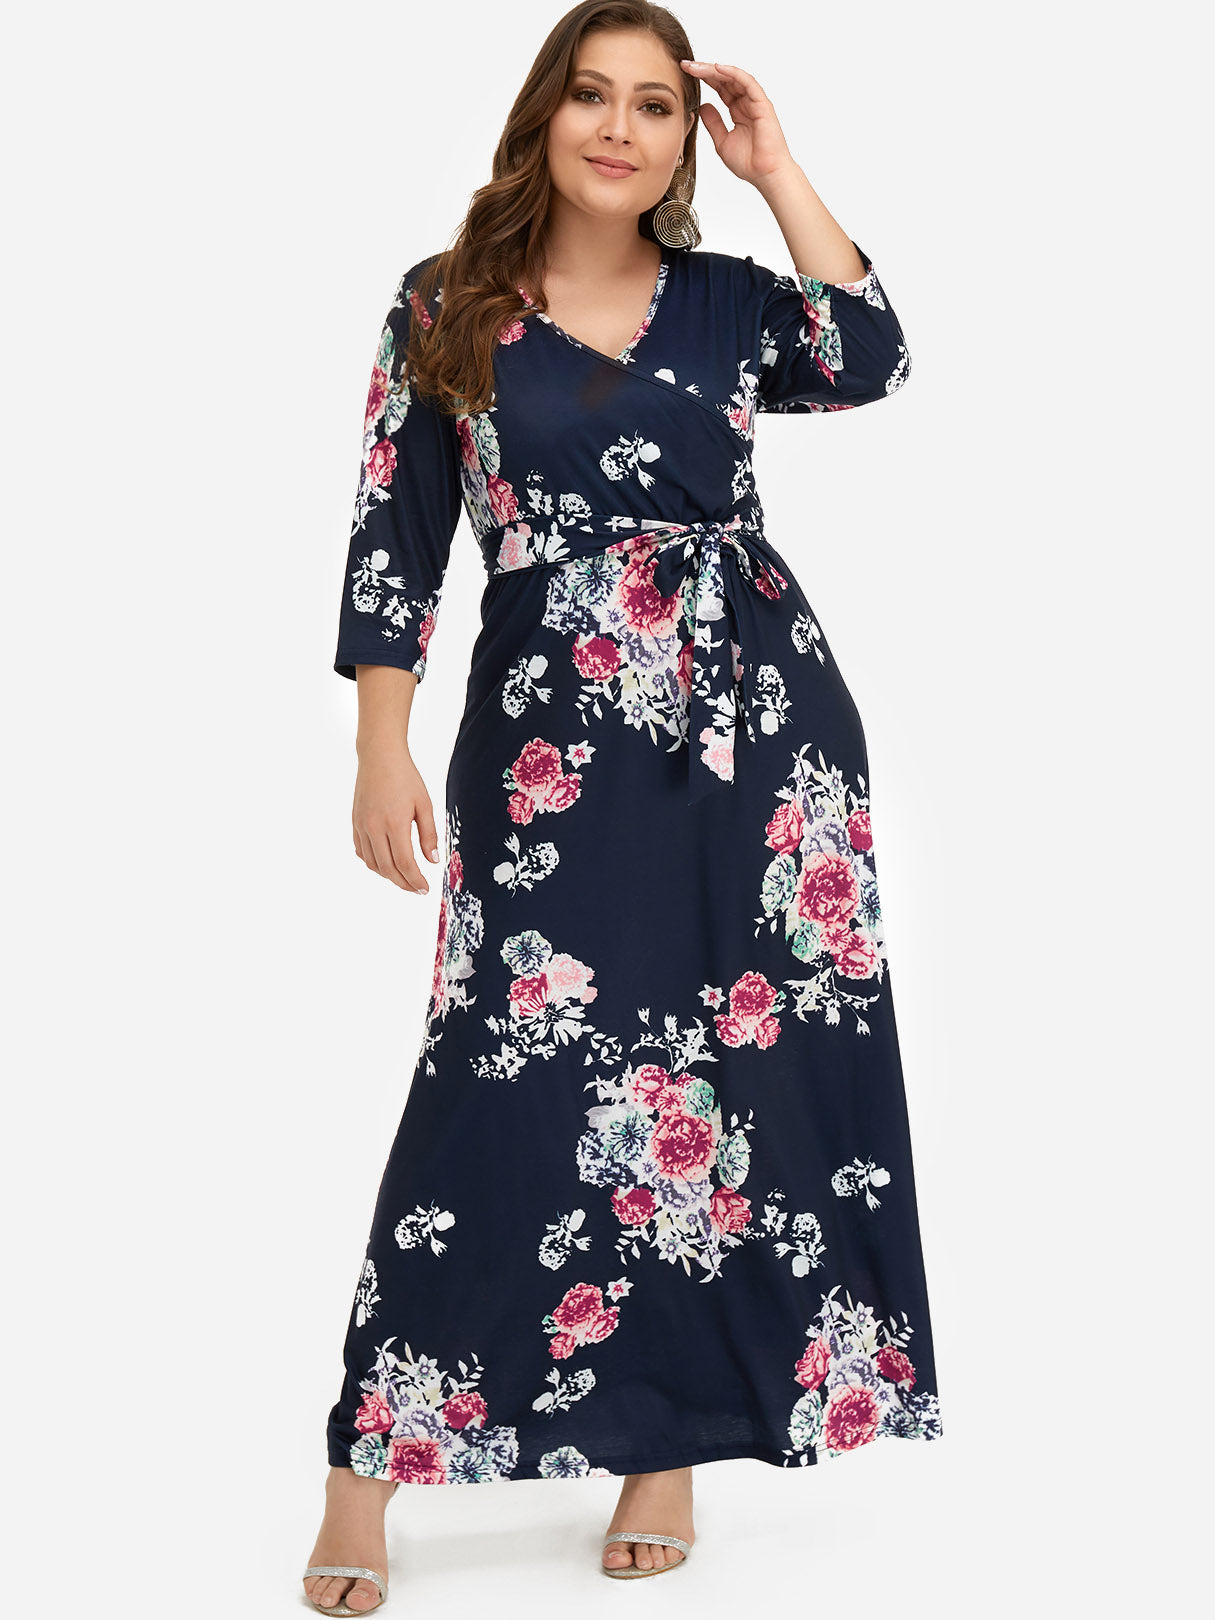 Wholesale V-Neck Floral Print Belt Self-Tie Wrap 3/4 Sleeve Blue Plus Size Dress